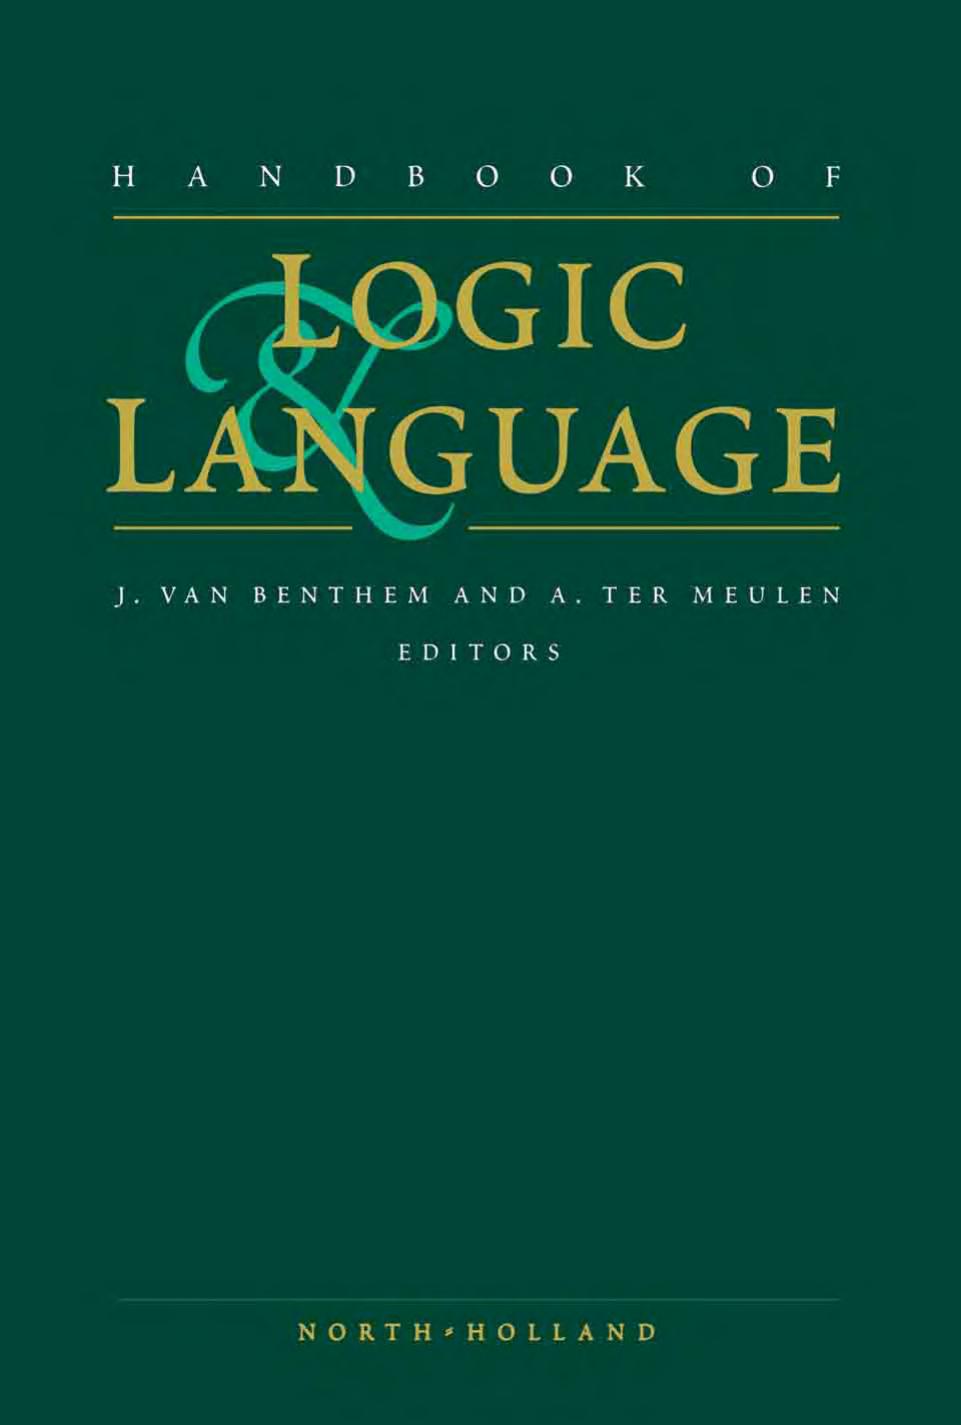 Handbook of Logic and Language